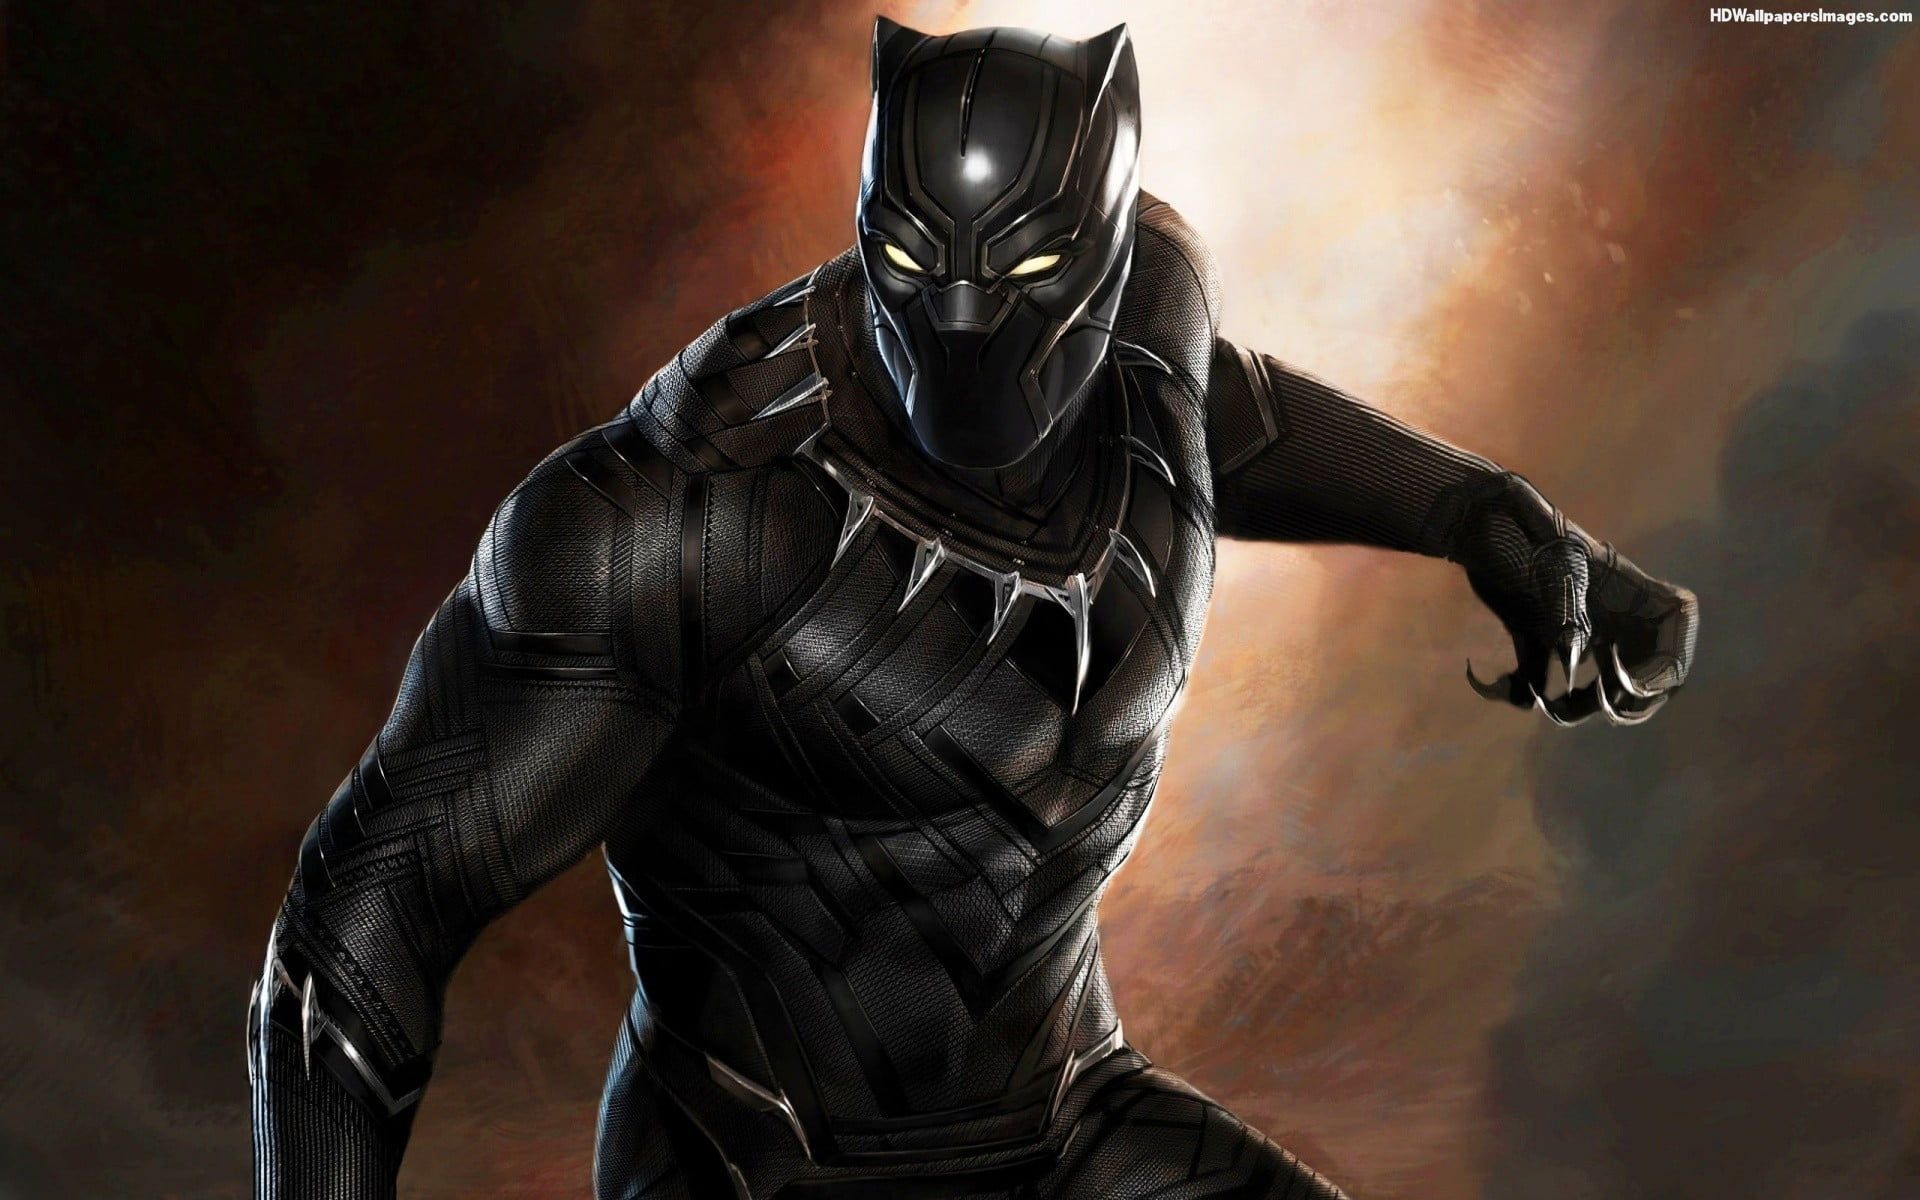 Marvel Black Panther digital wallpaper Marvel Cinematic Universe Black Panther concept a. Black panther costume, Black panther marvel, Black panther movie costume